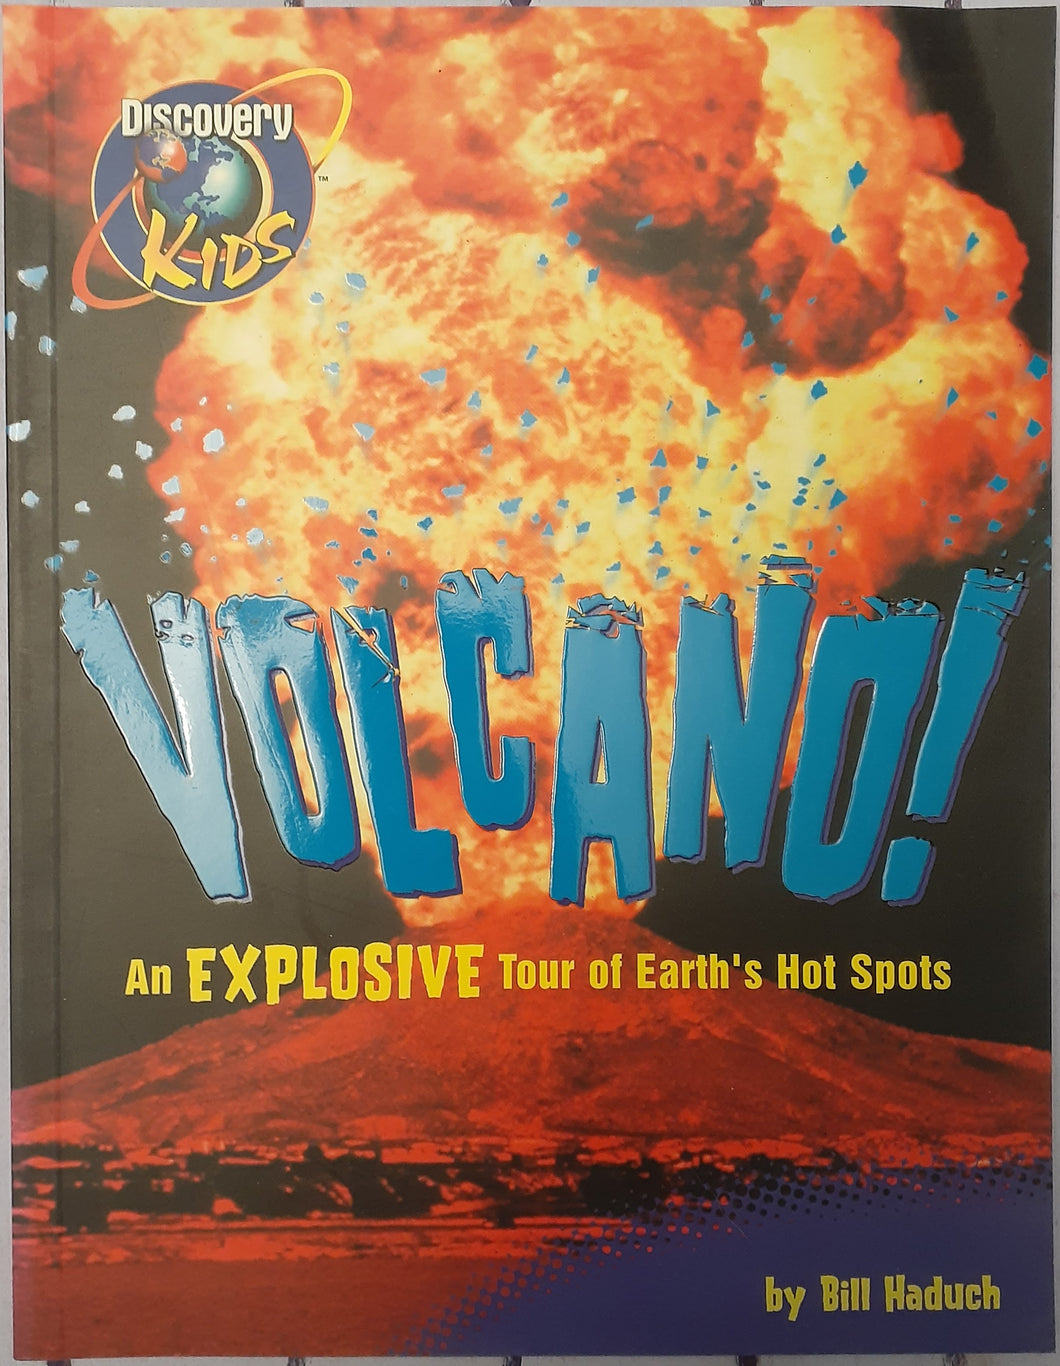 Volcano!